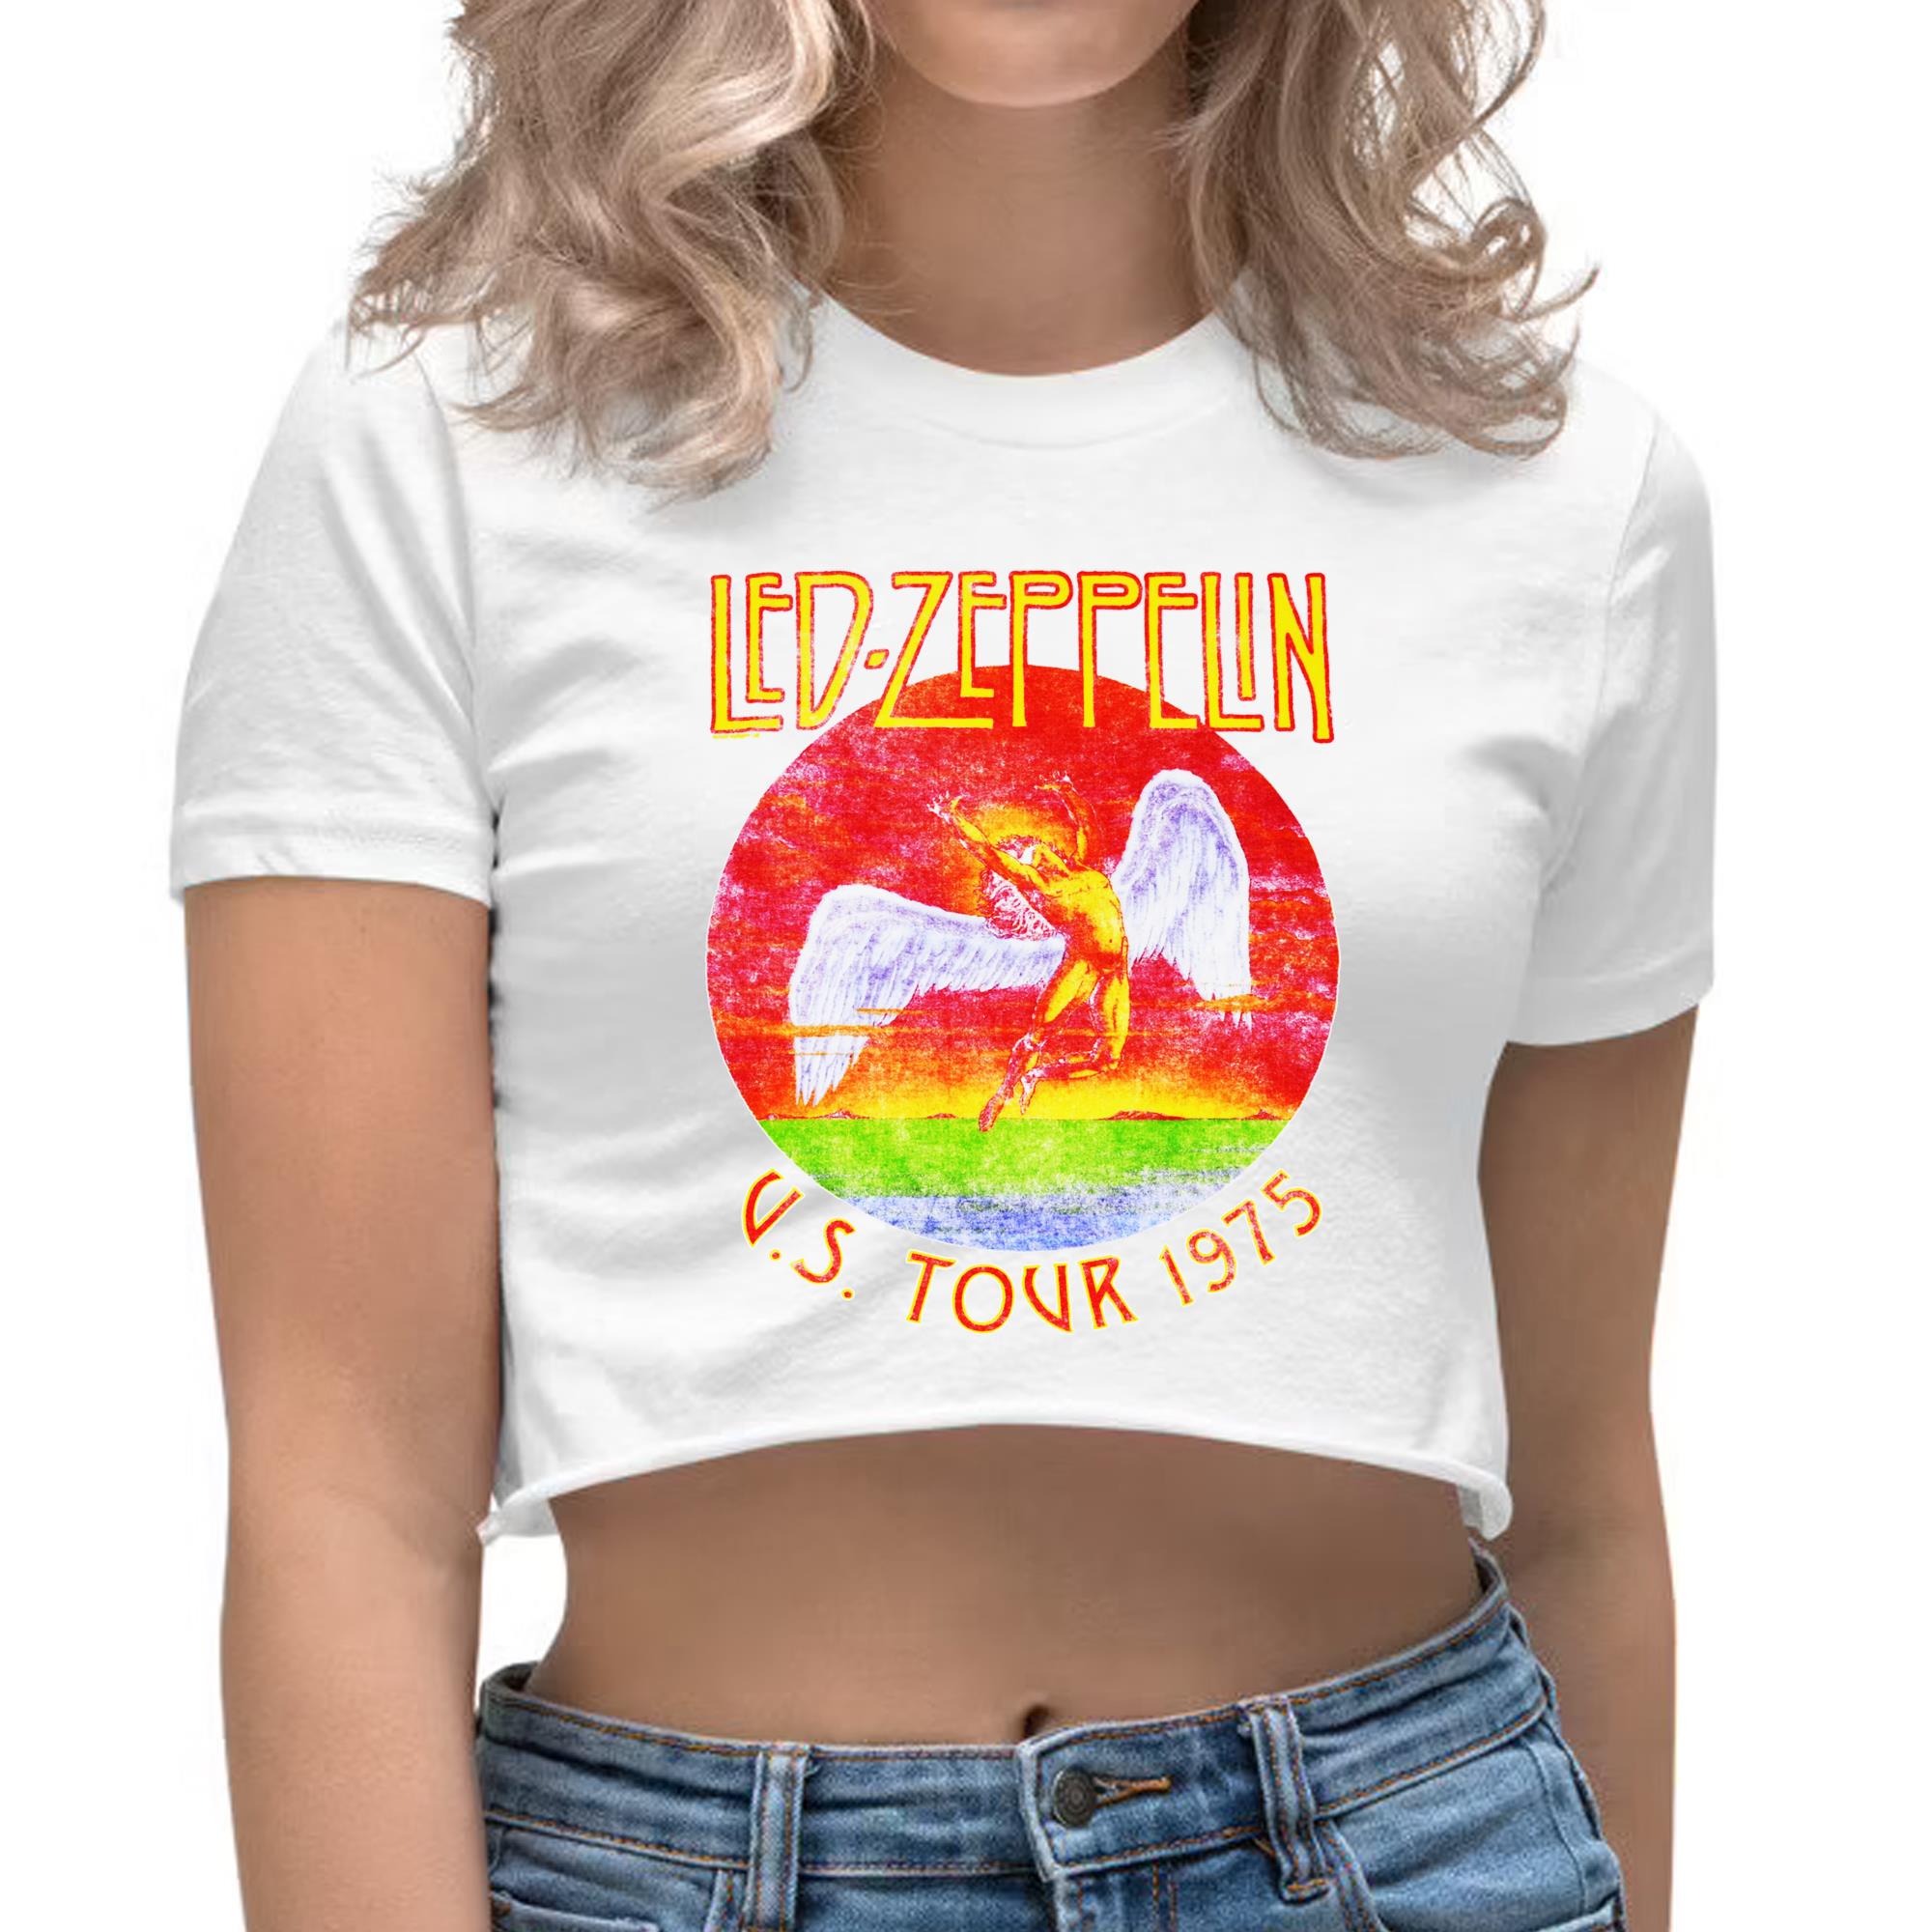 U.S. Tour 1975 Crop Top T-shirtoo